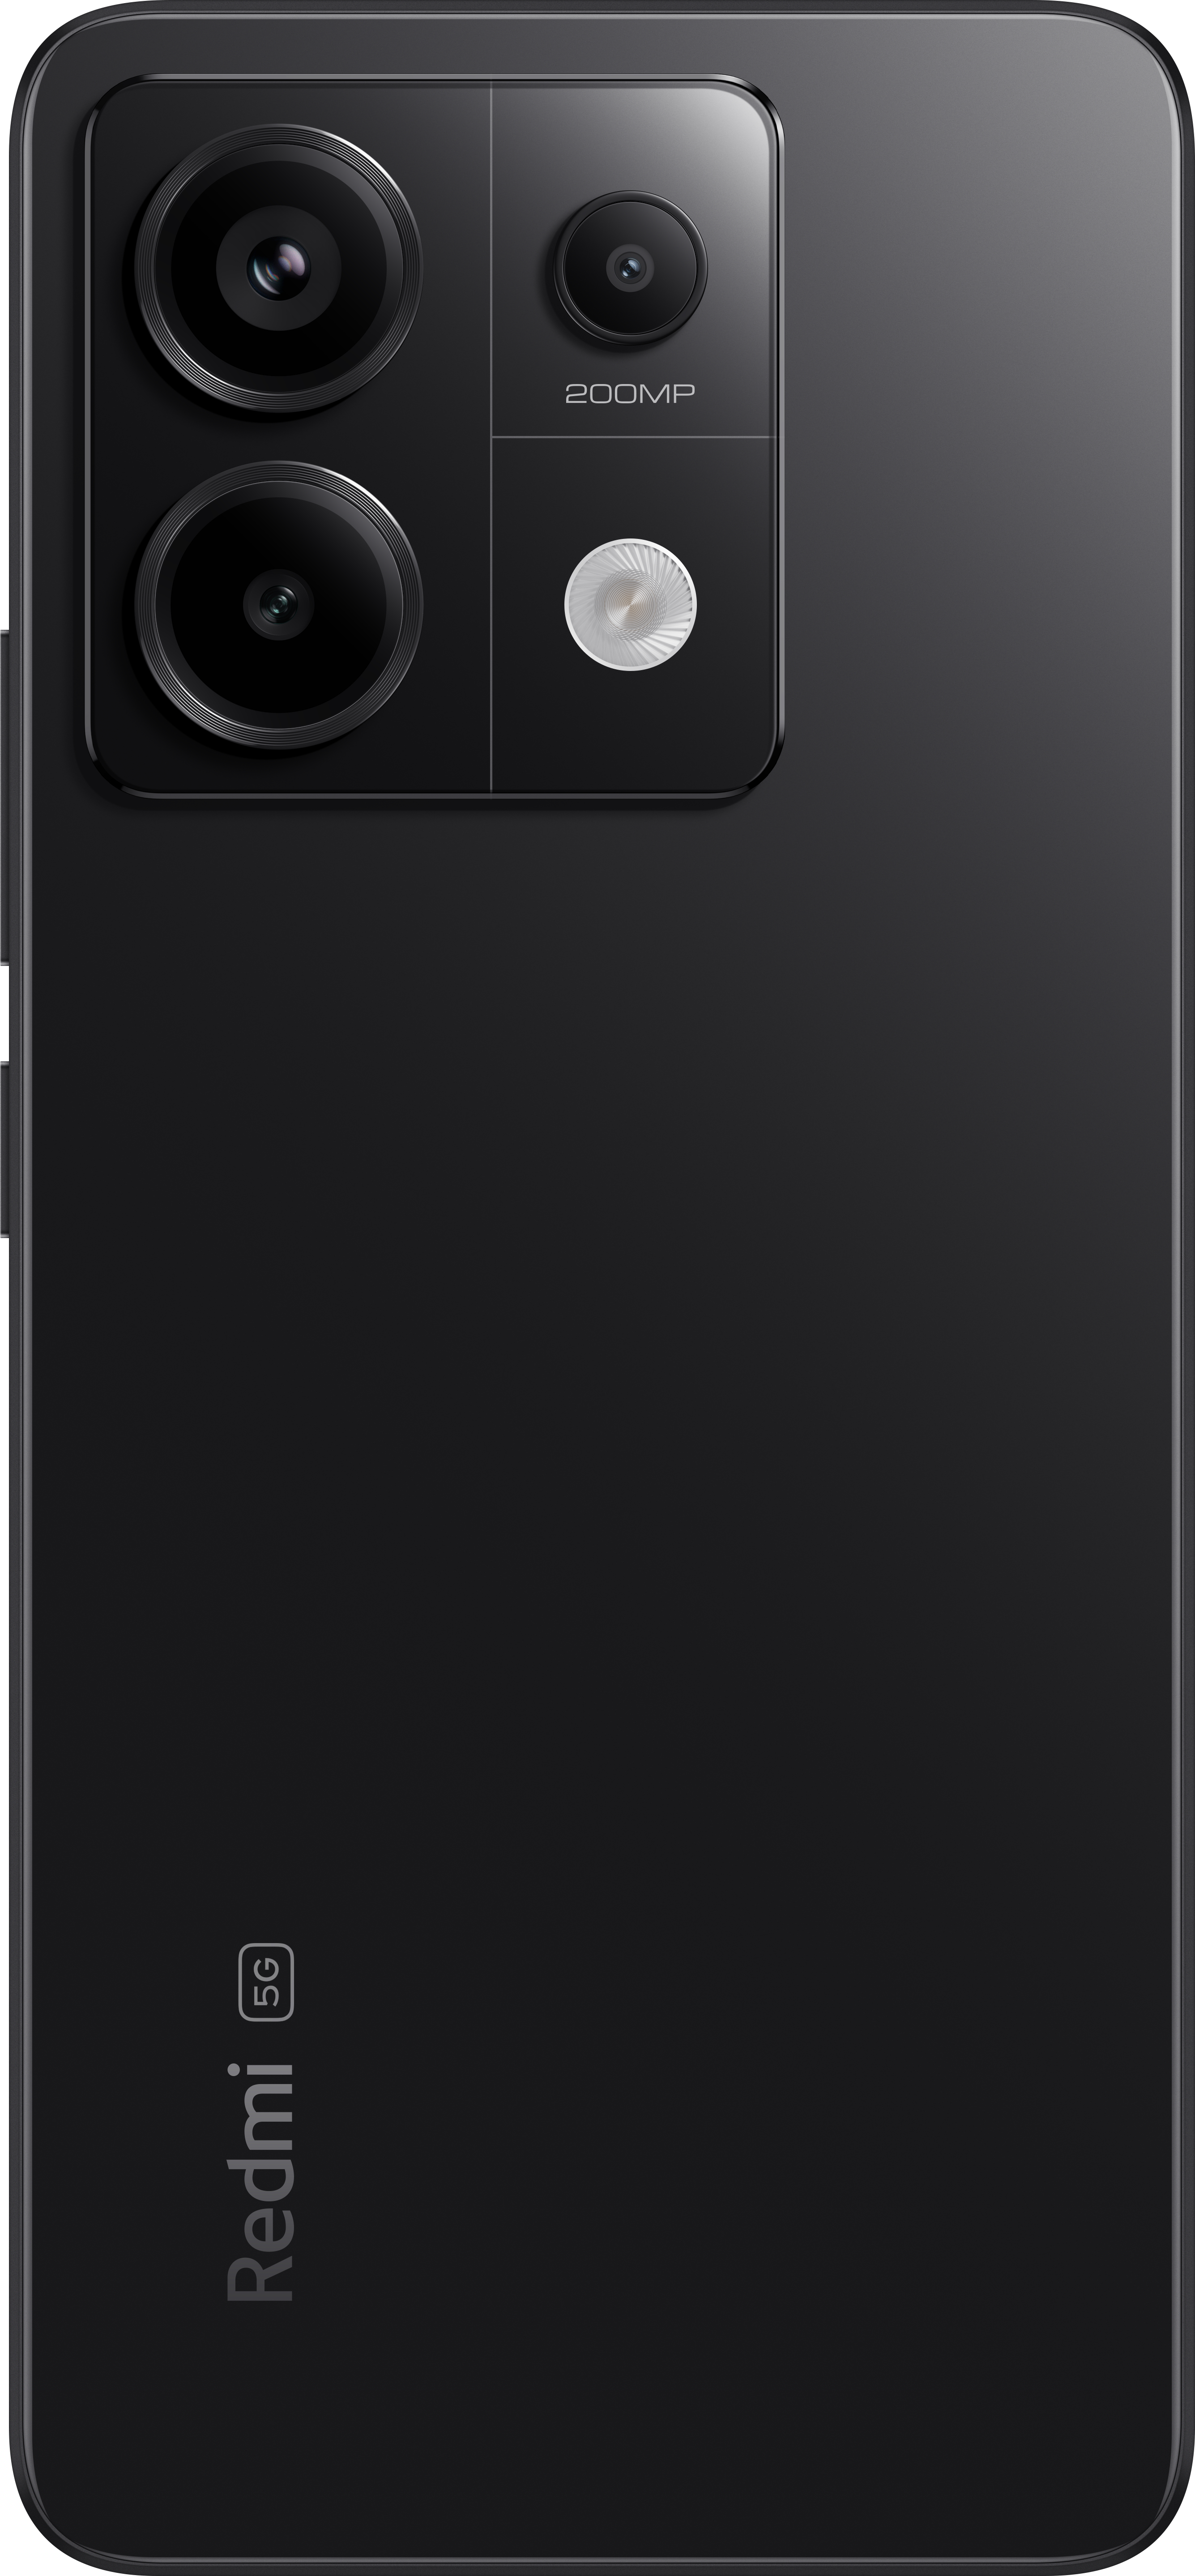 XIAOMI Redmi Note 13 Pro 256 Midnight Dual 5G GB SIM Black